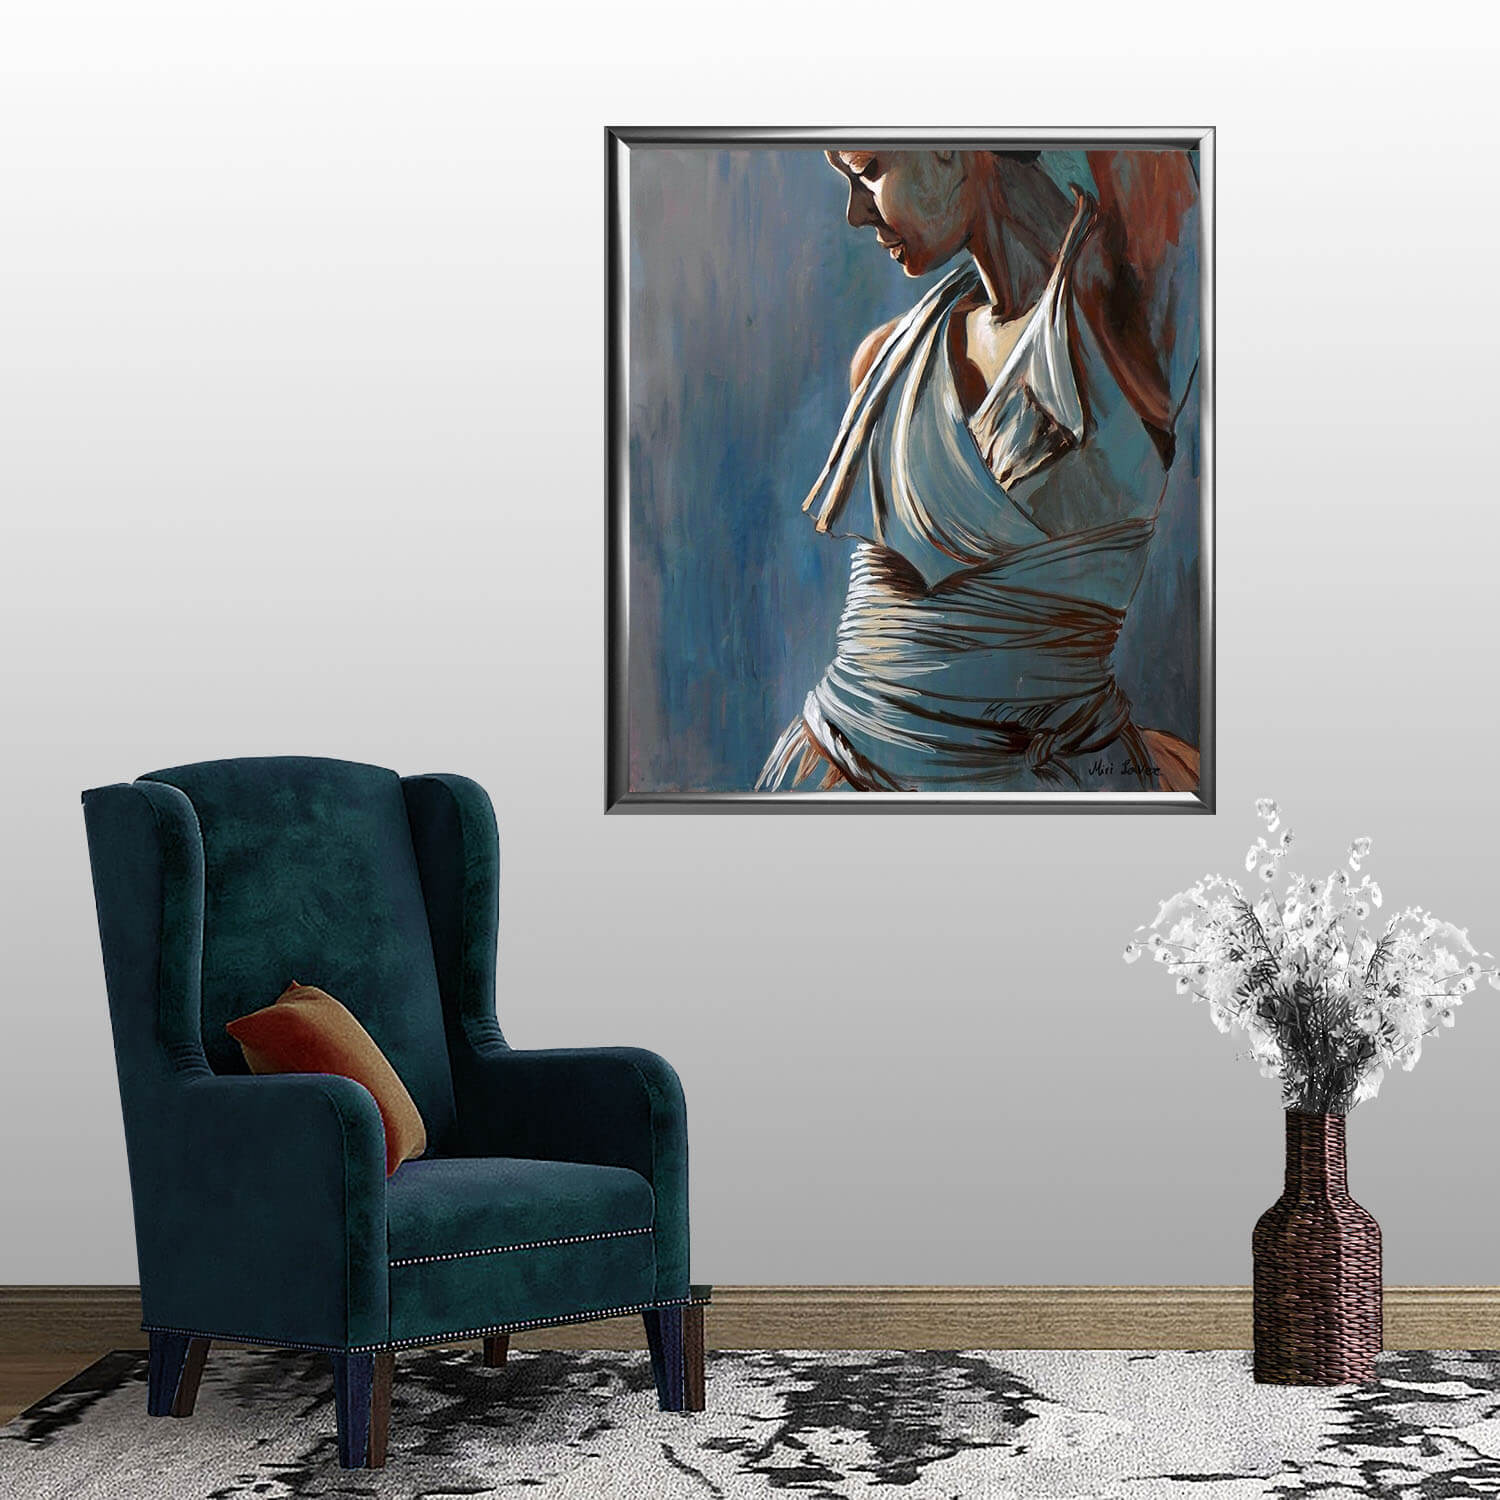 ציור אישה רוקדת תמונה מעוררת השראה בסלון ציירת מירי לביא